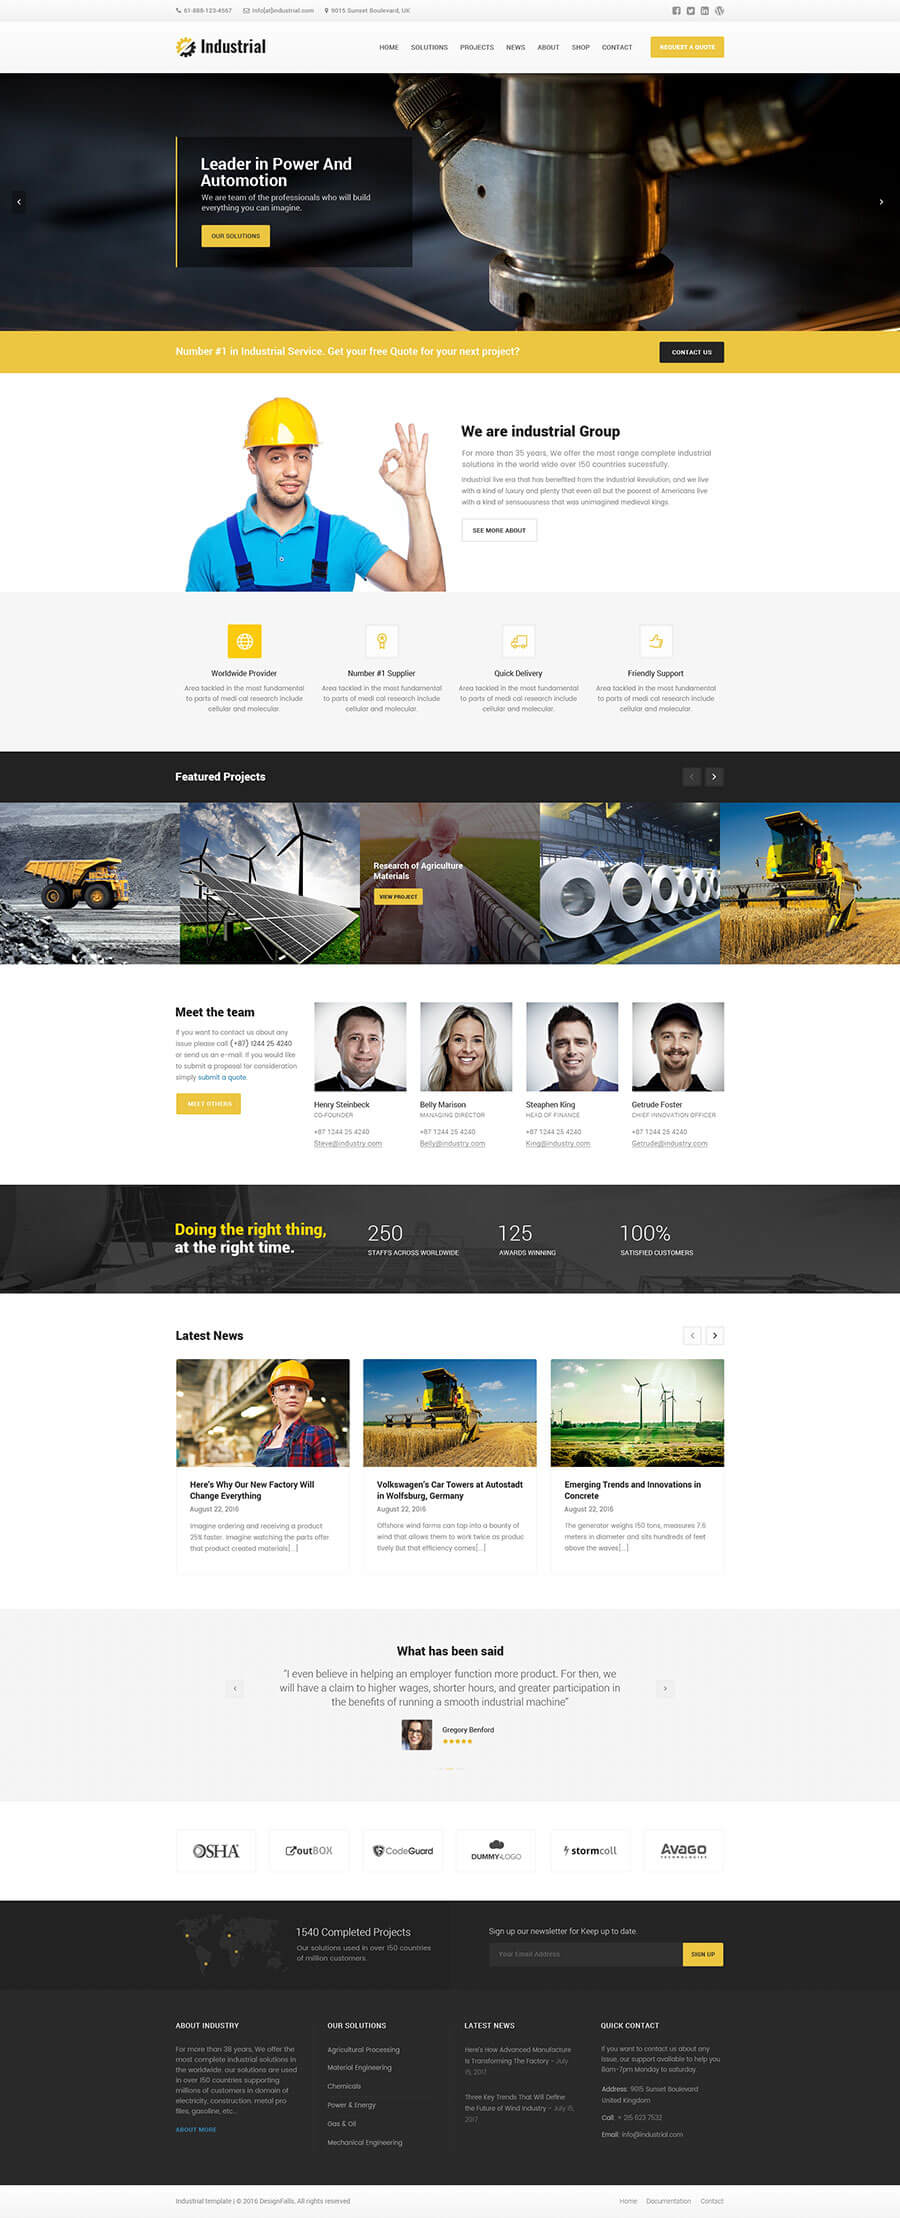 thiết kế website nhà máy, thiết kế website xí nghiệp, thiết kế website khu công nghiệp chuyên nghiệp